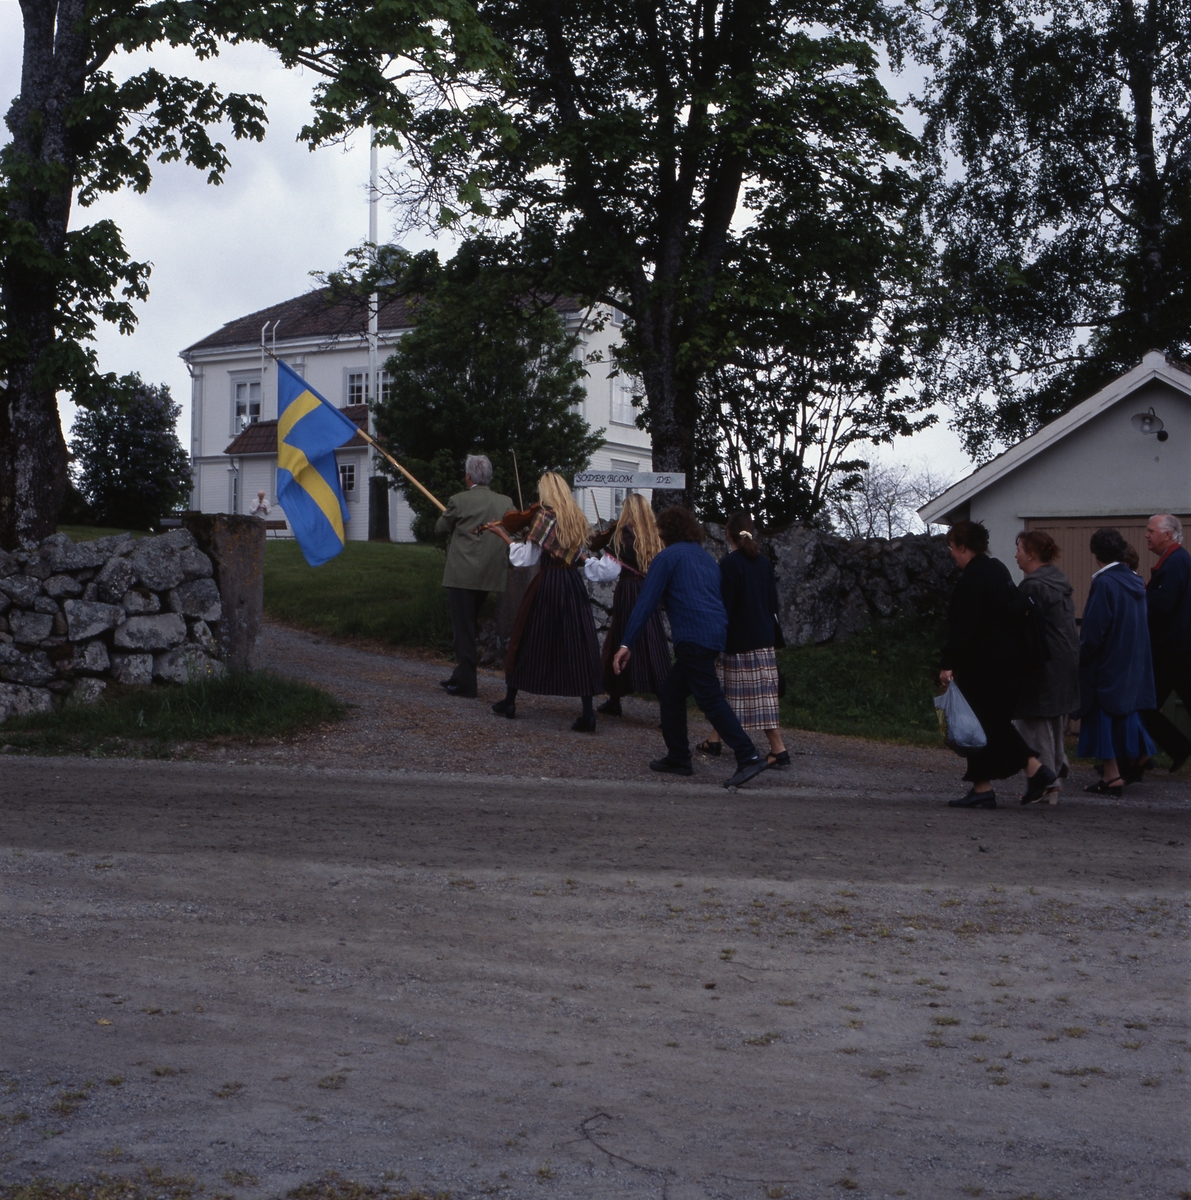 Kyrkvandring i Trönö, söndagen 17 juni 2001. Främst i ledet går en man med fana och efter honom går "Spelsystrarna" med sina fioler. Därefter går resten av deltagarna. Här är de på väg upp mot Söderblomsgården.